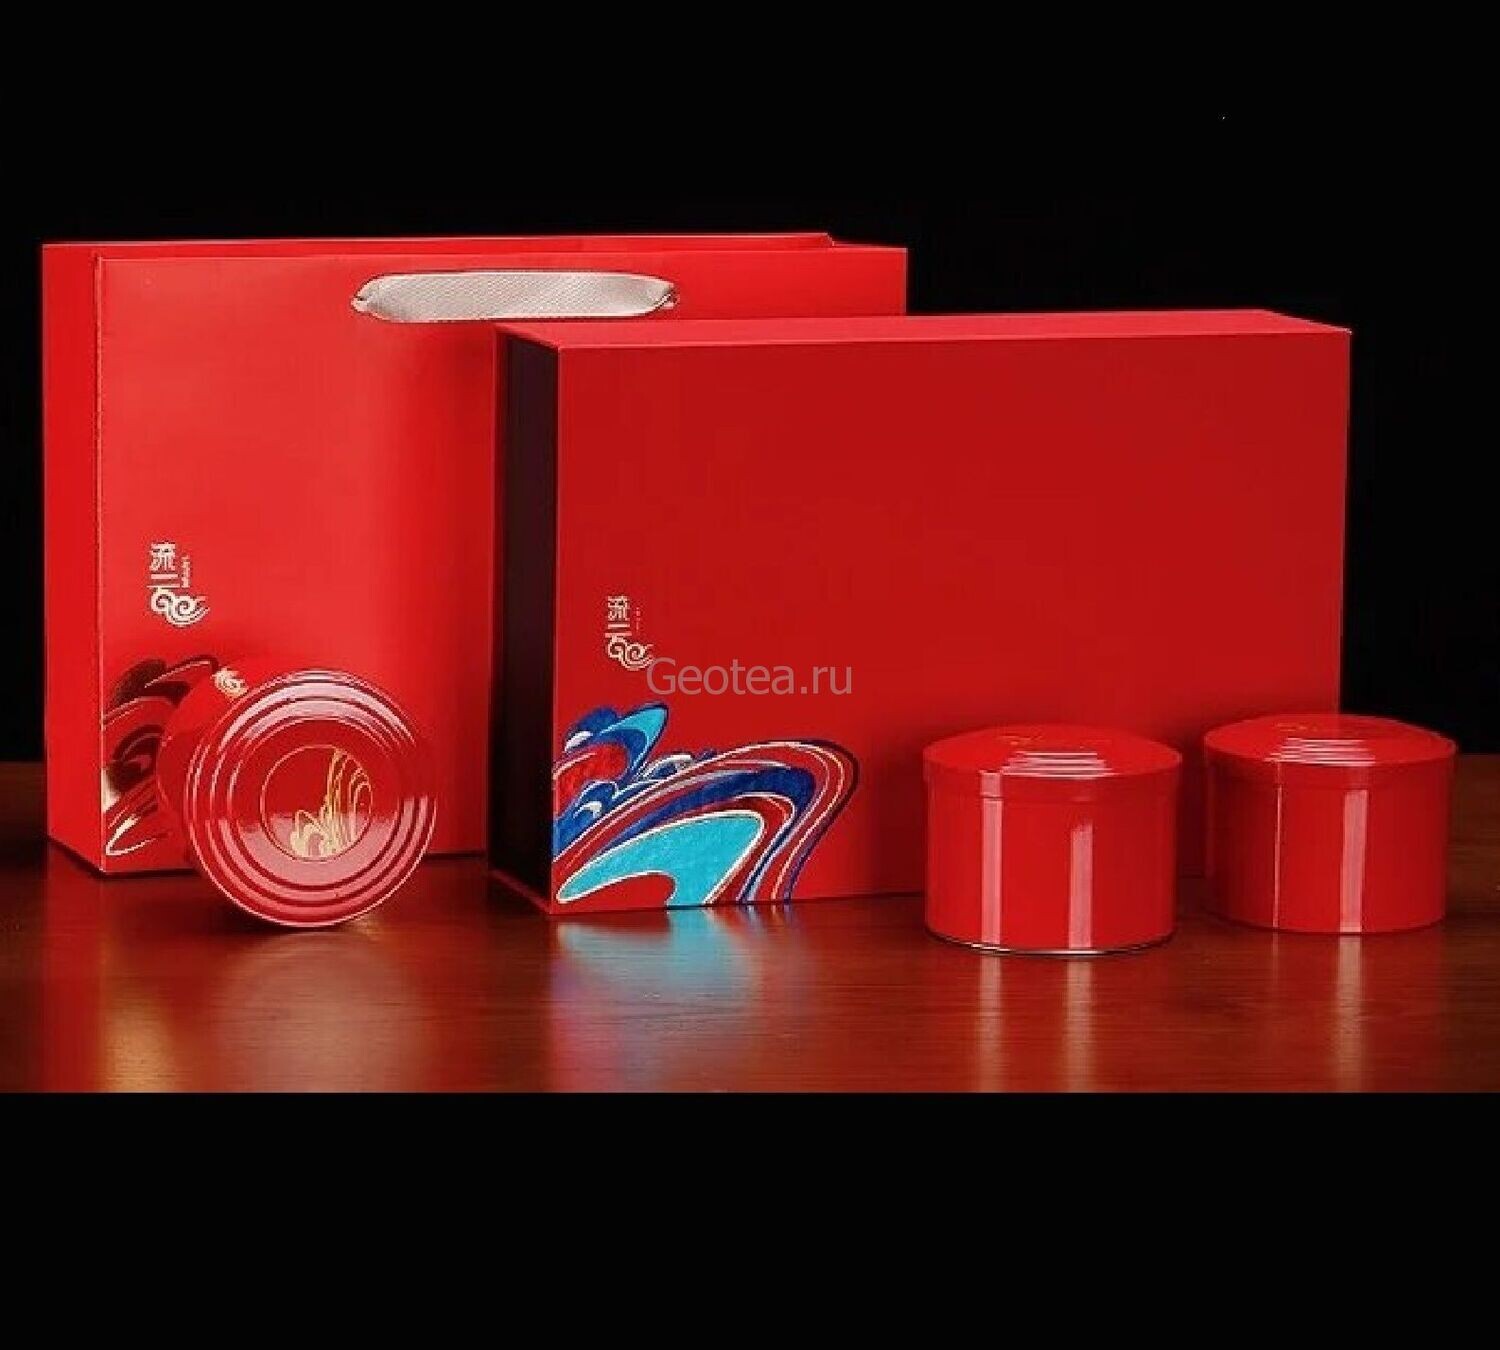 Подарочный набор "Золотые годы RED", 3 банки и сумка, картон / жесть